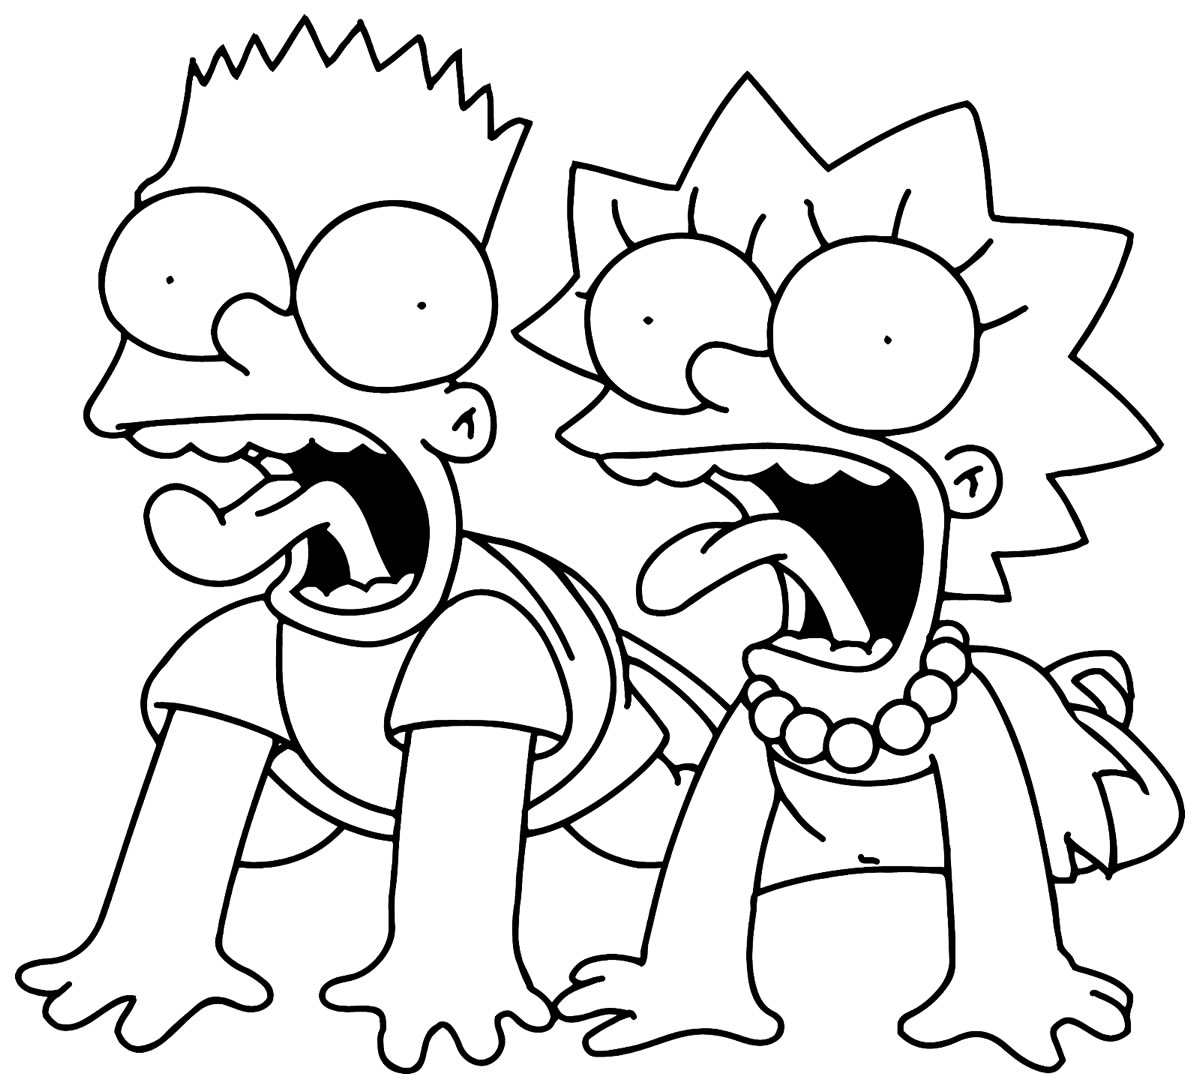 50+ Desenhos de Simpsons para imprimir e colorir - Dicas Práticas